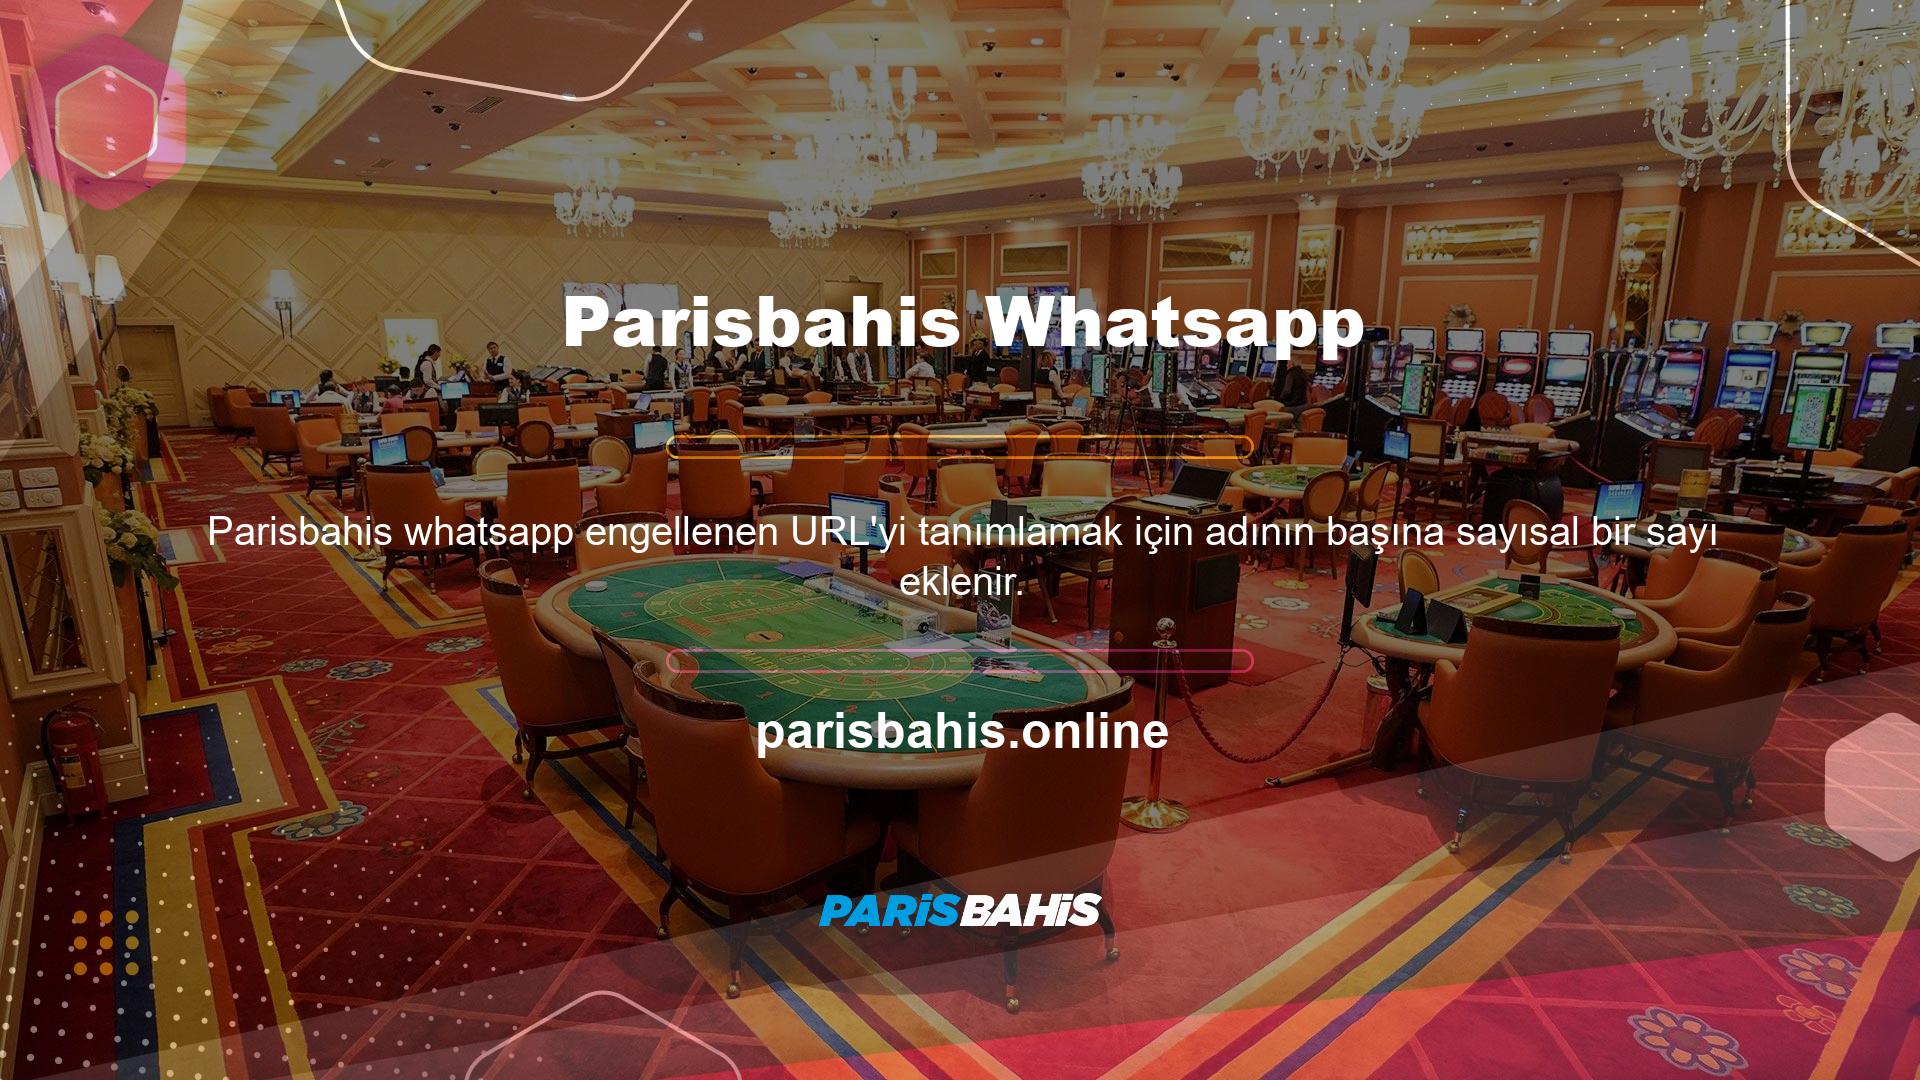 Whatsapp desteğine erişmek için Parisbahis giriş adresi kullanılabilir